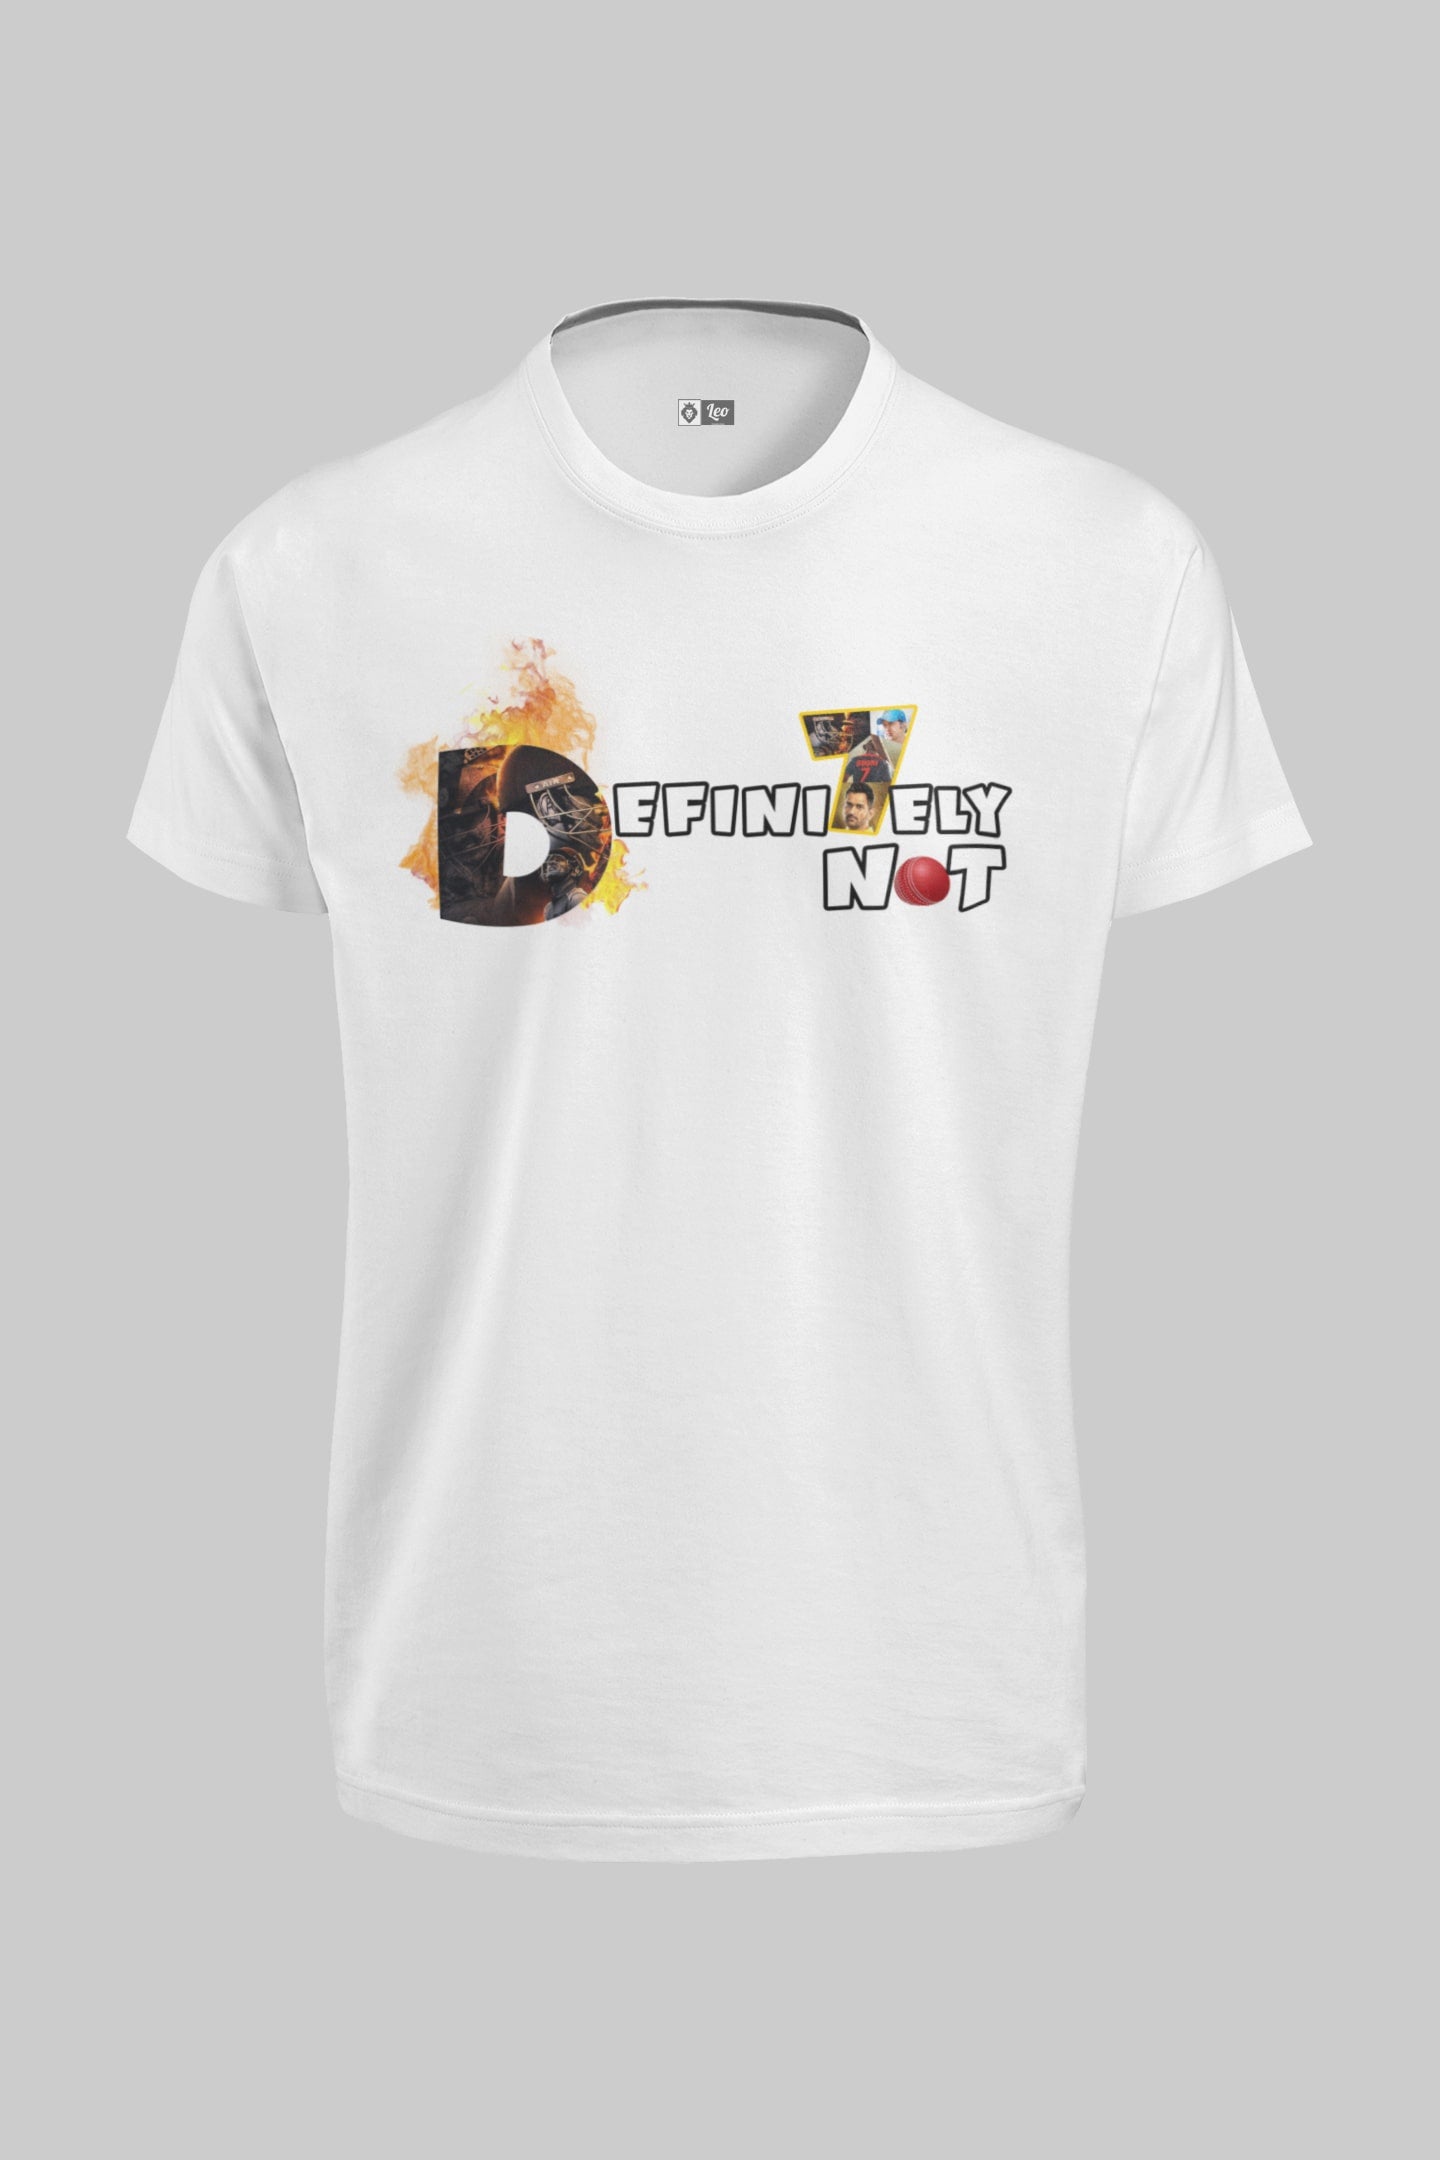 Buy Definitely Not Dhoni T-Shirt Online 